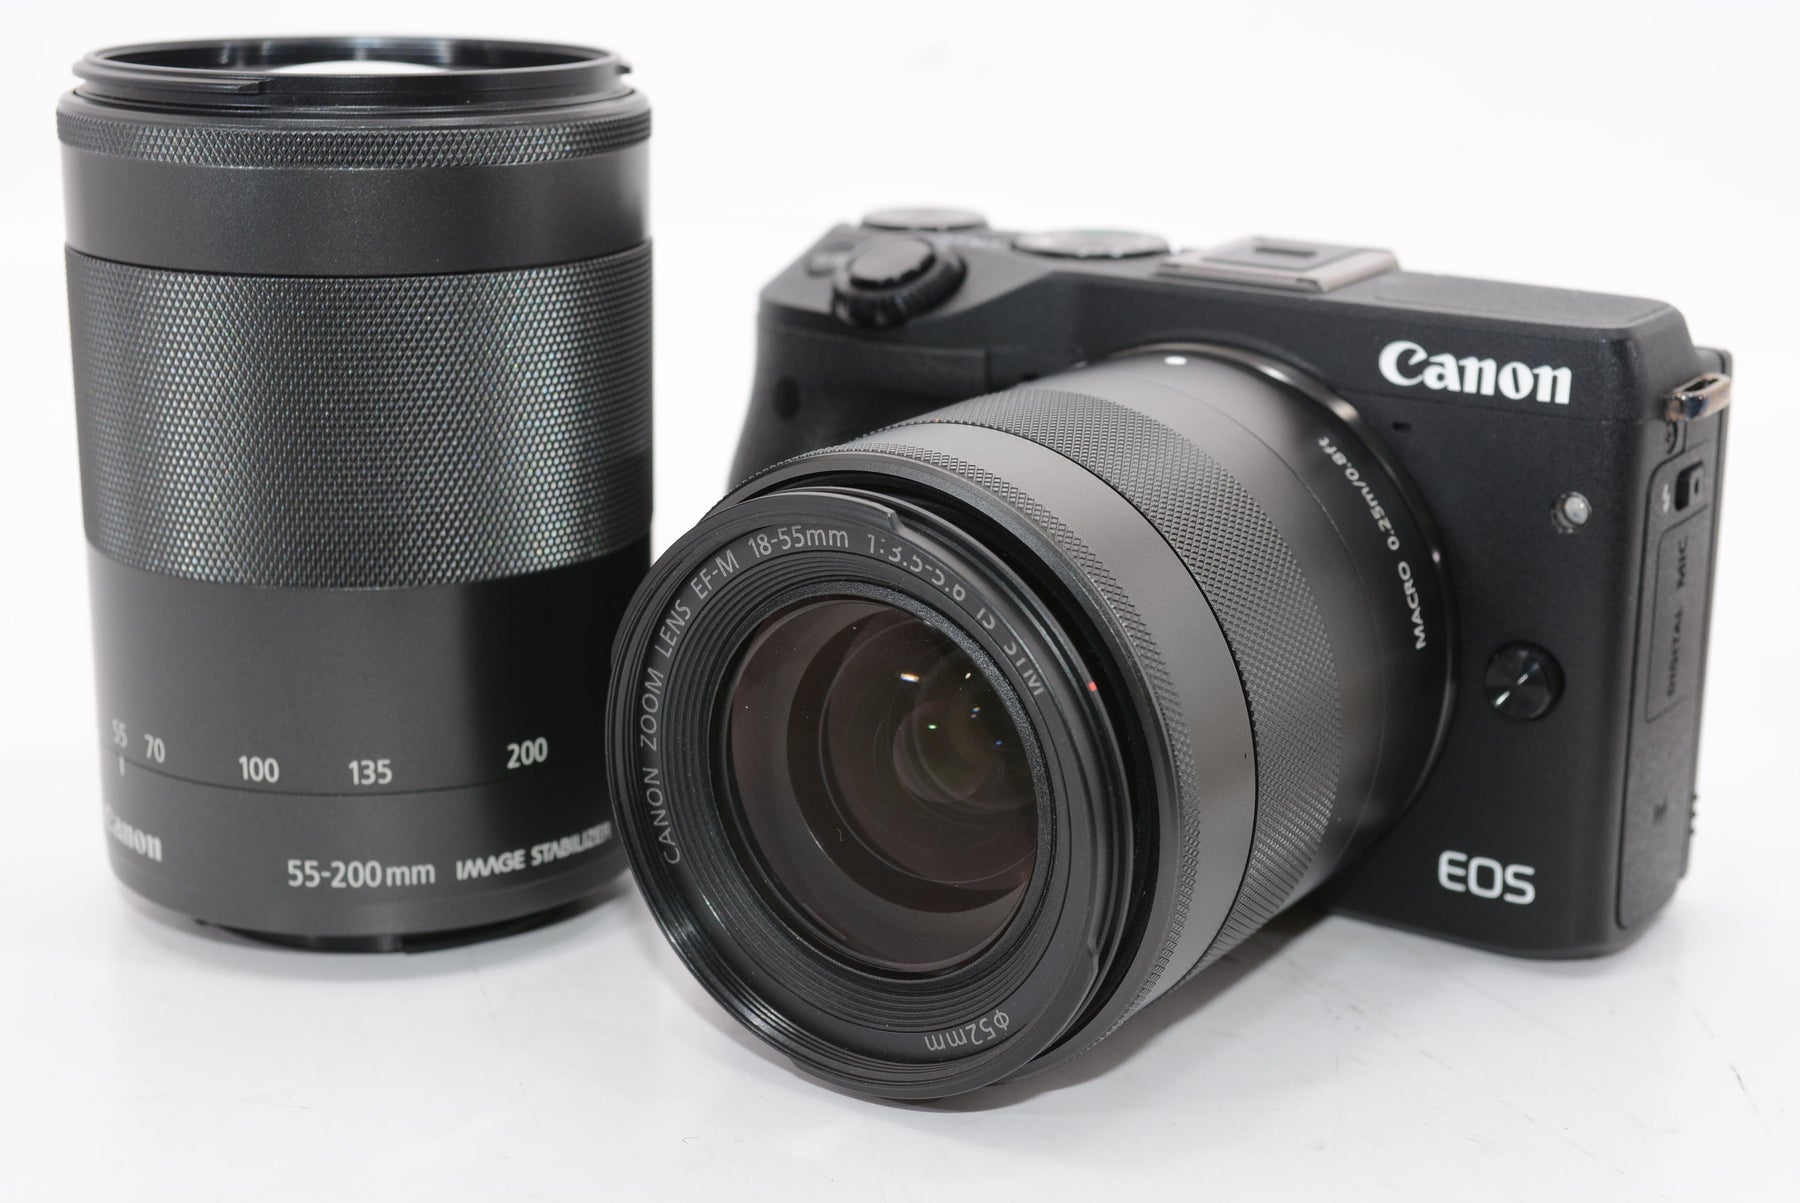 【外観特上級】Canon ミラーレス一眼カメラ EOS M3 ダブルズームキット(ブラック) EF-M18-55mm F3.5-5.6 IS STM EF-M55-200mm F4.5-6.3 IS STM 付属 EOSM3BK-WZK